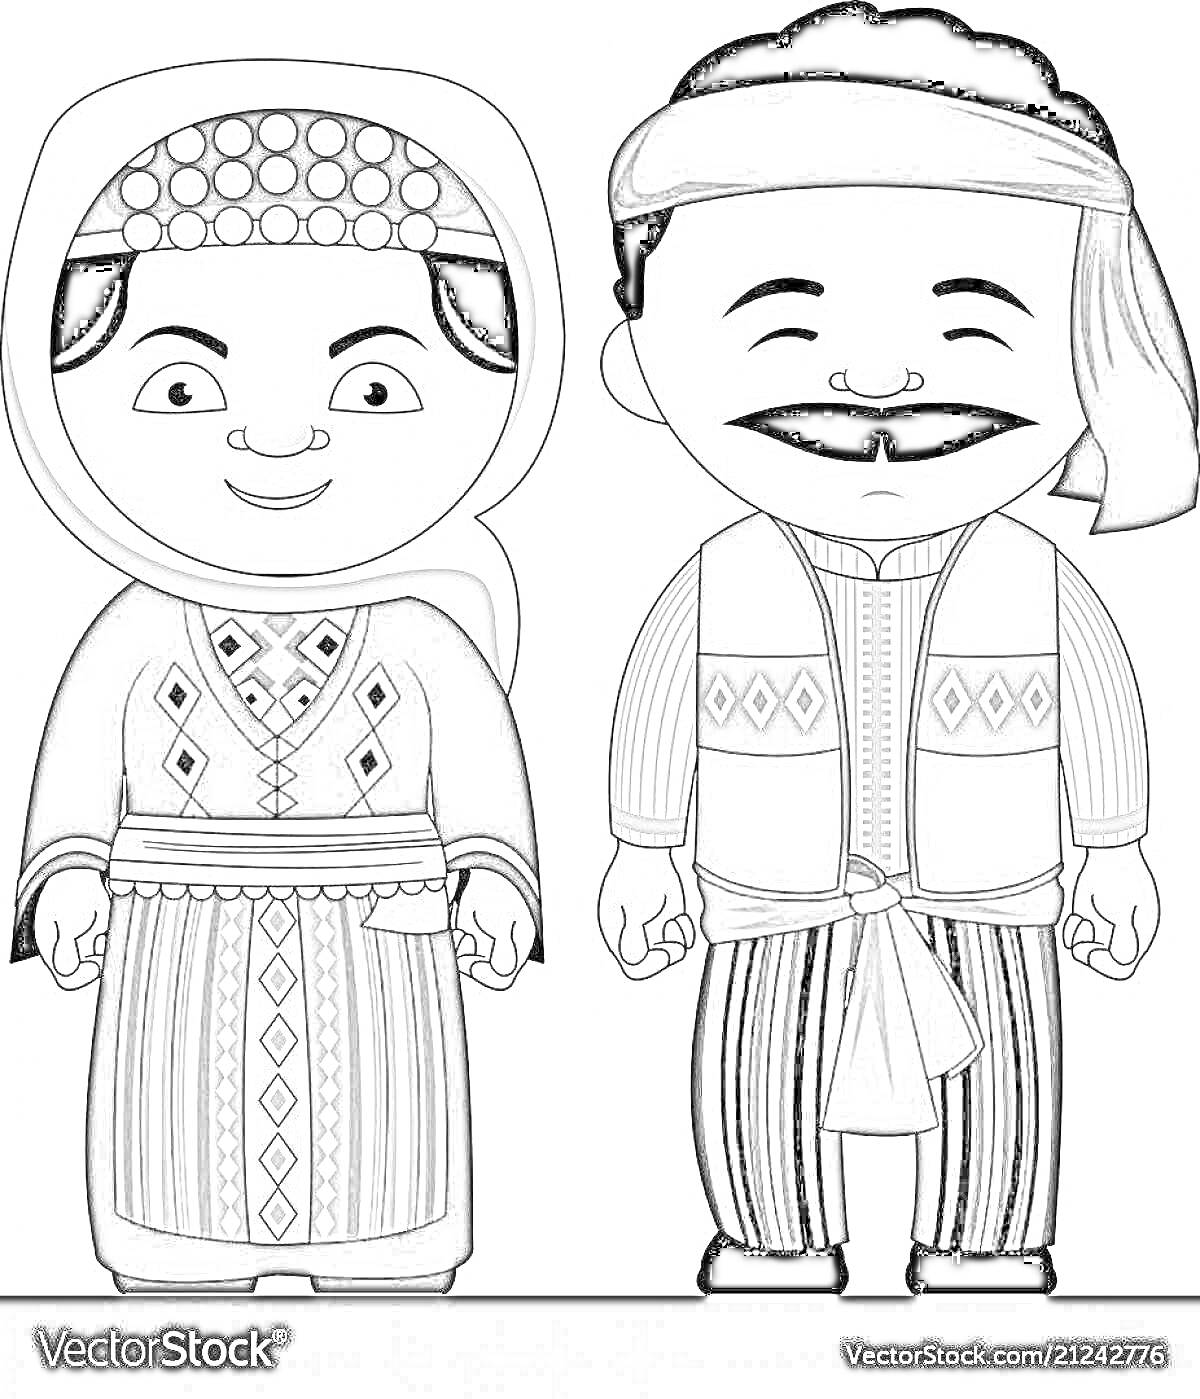 Раскраска Мужчина и женщина в армянских народных костюмах, со всеми художественными деталями. Женщина в длинном платье, украшенном орнаментами, поясом и головным обручем с платком; мужчина в рубашке, жилетке, полосатых брюках и с повязкой на голове.